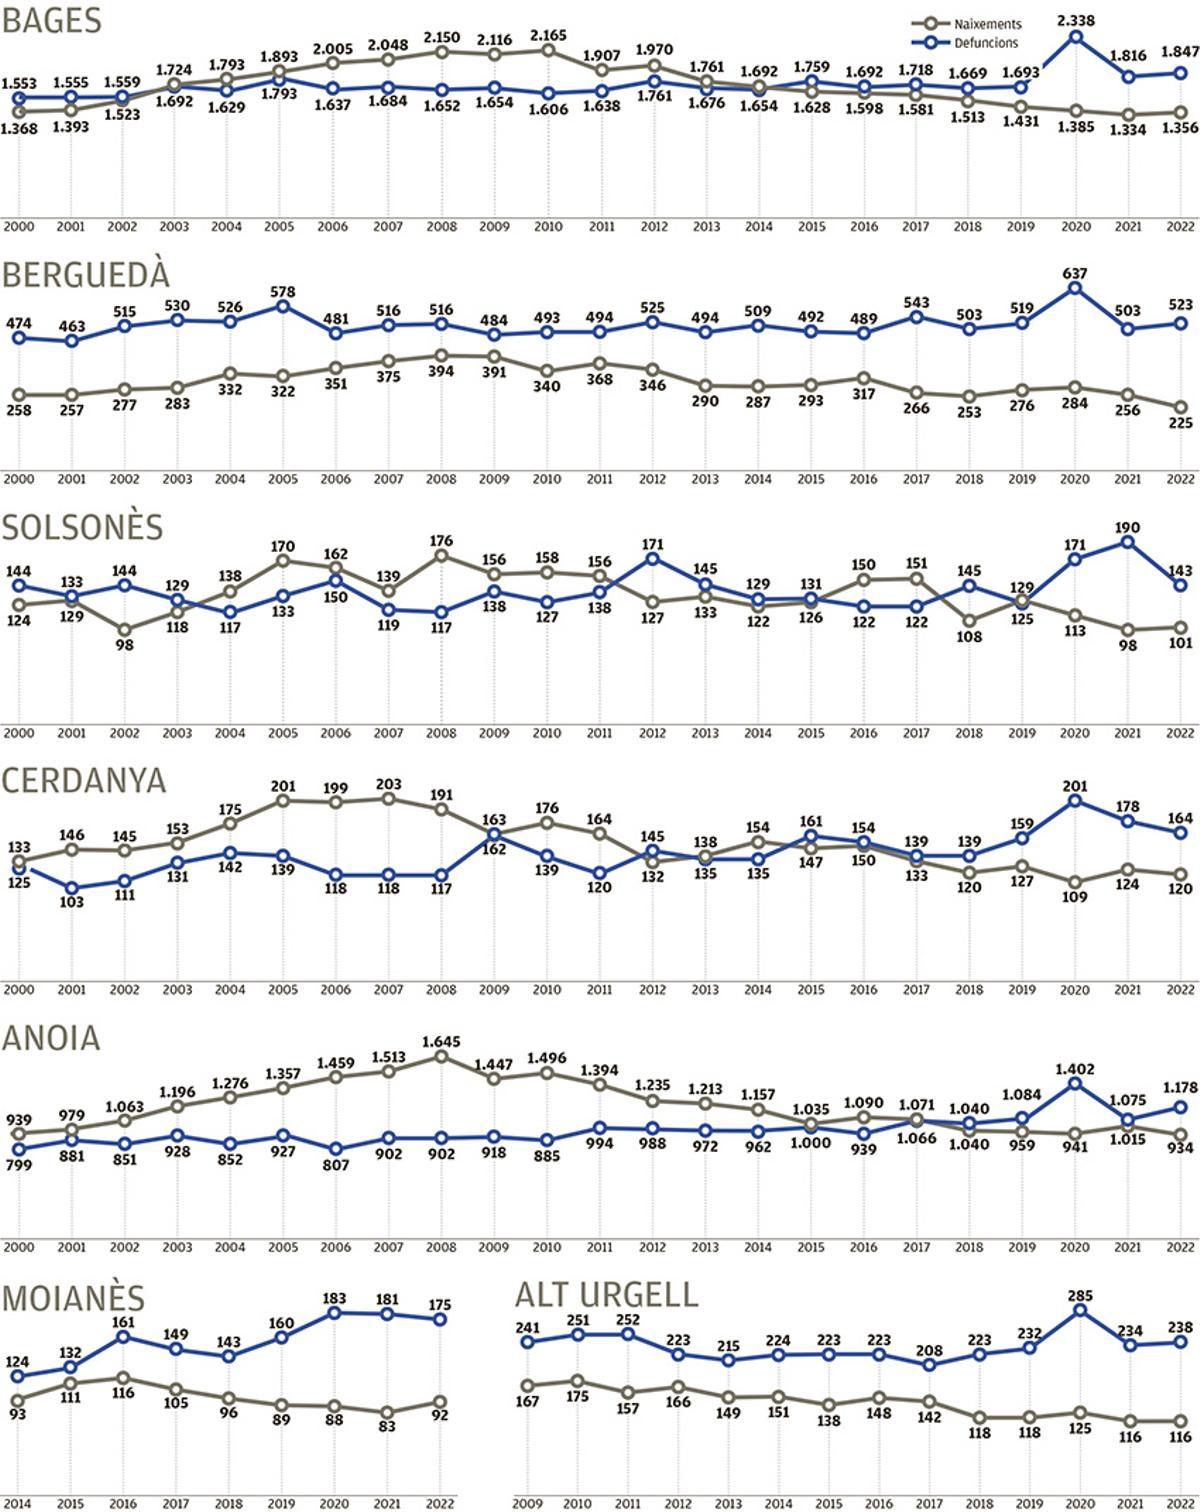 Balanç de naixements i defuncions per comarques des del 2000